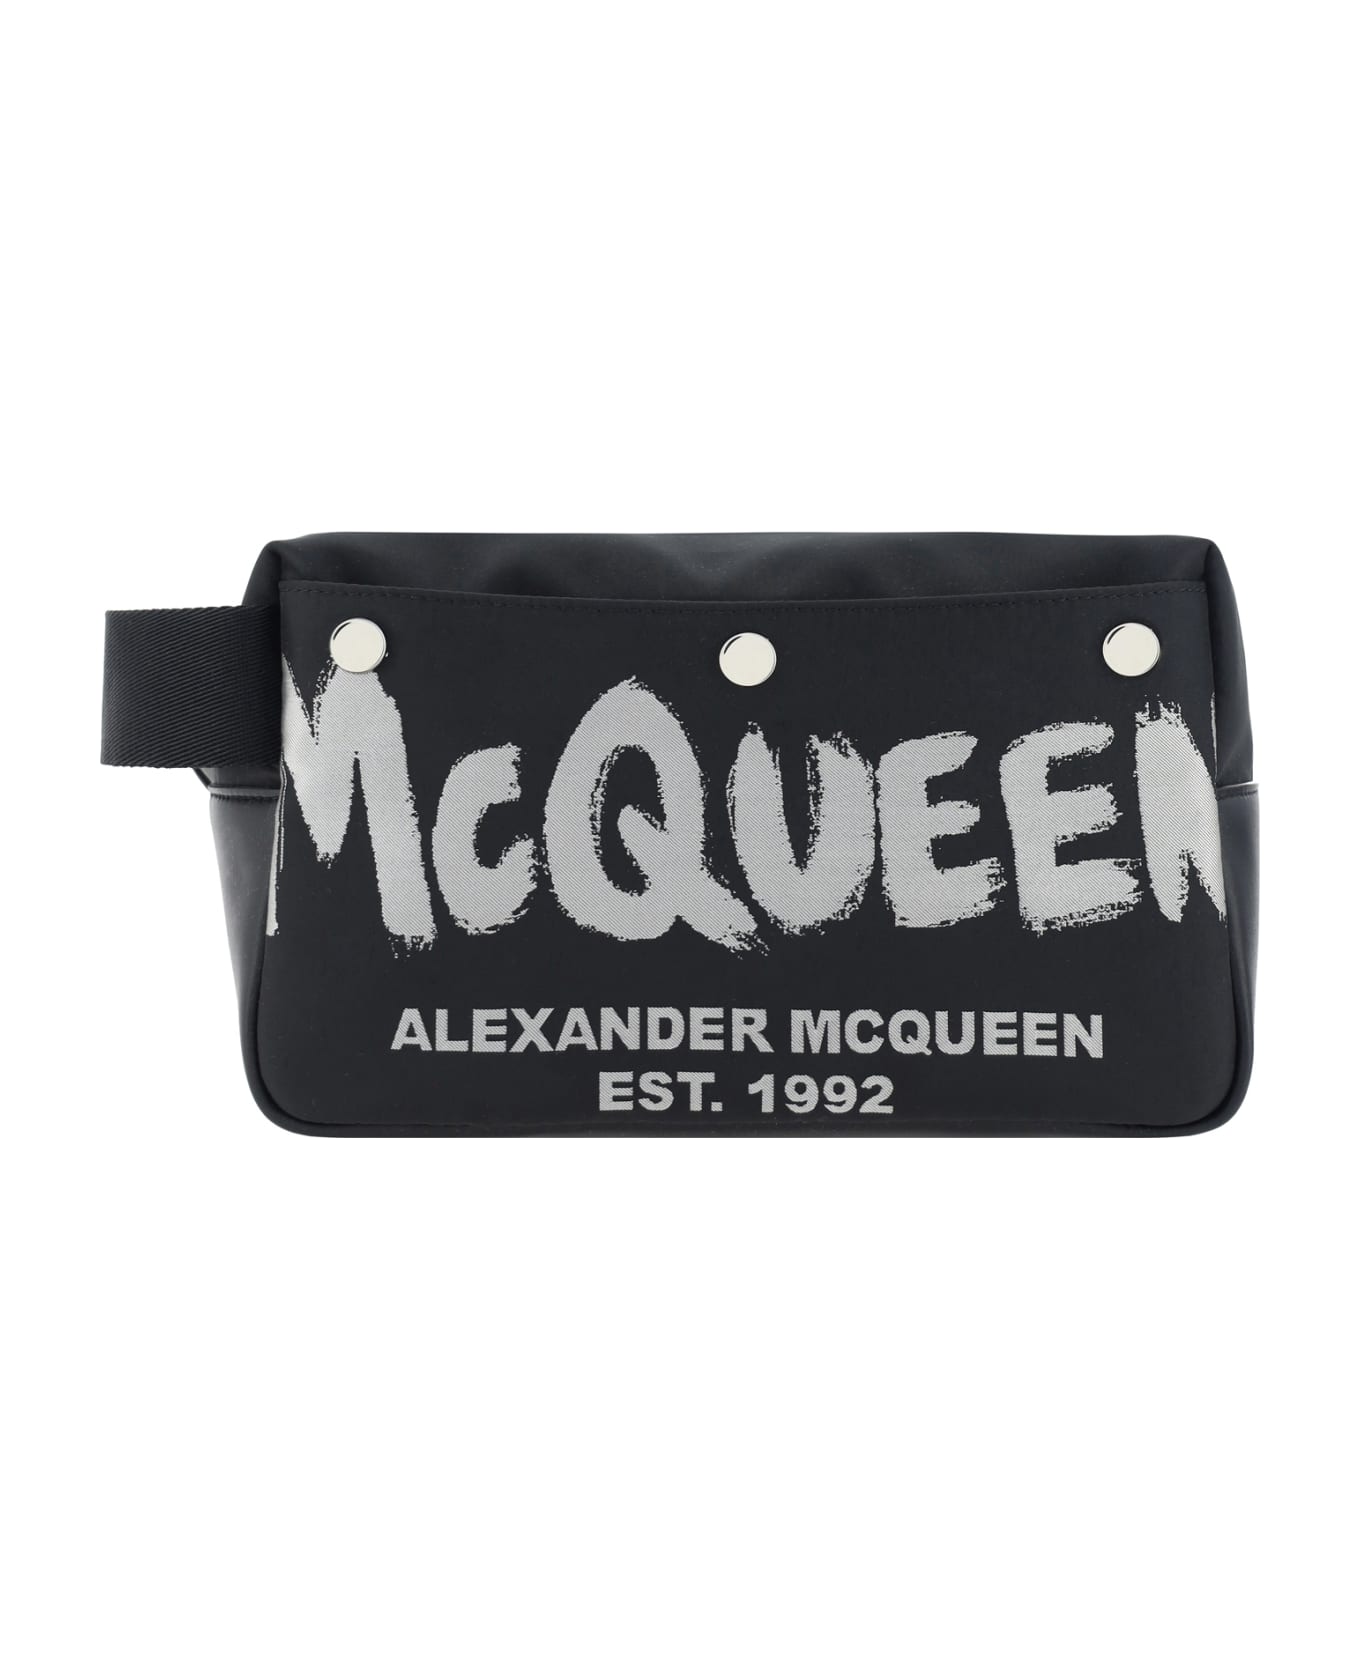 Alexander McQueen Beauty Case - Black/off White ベルトバッグ